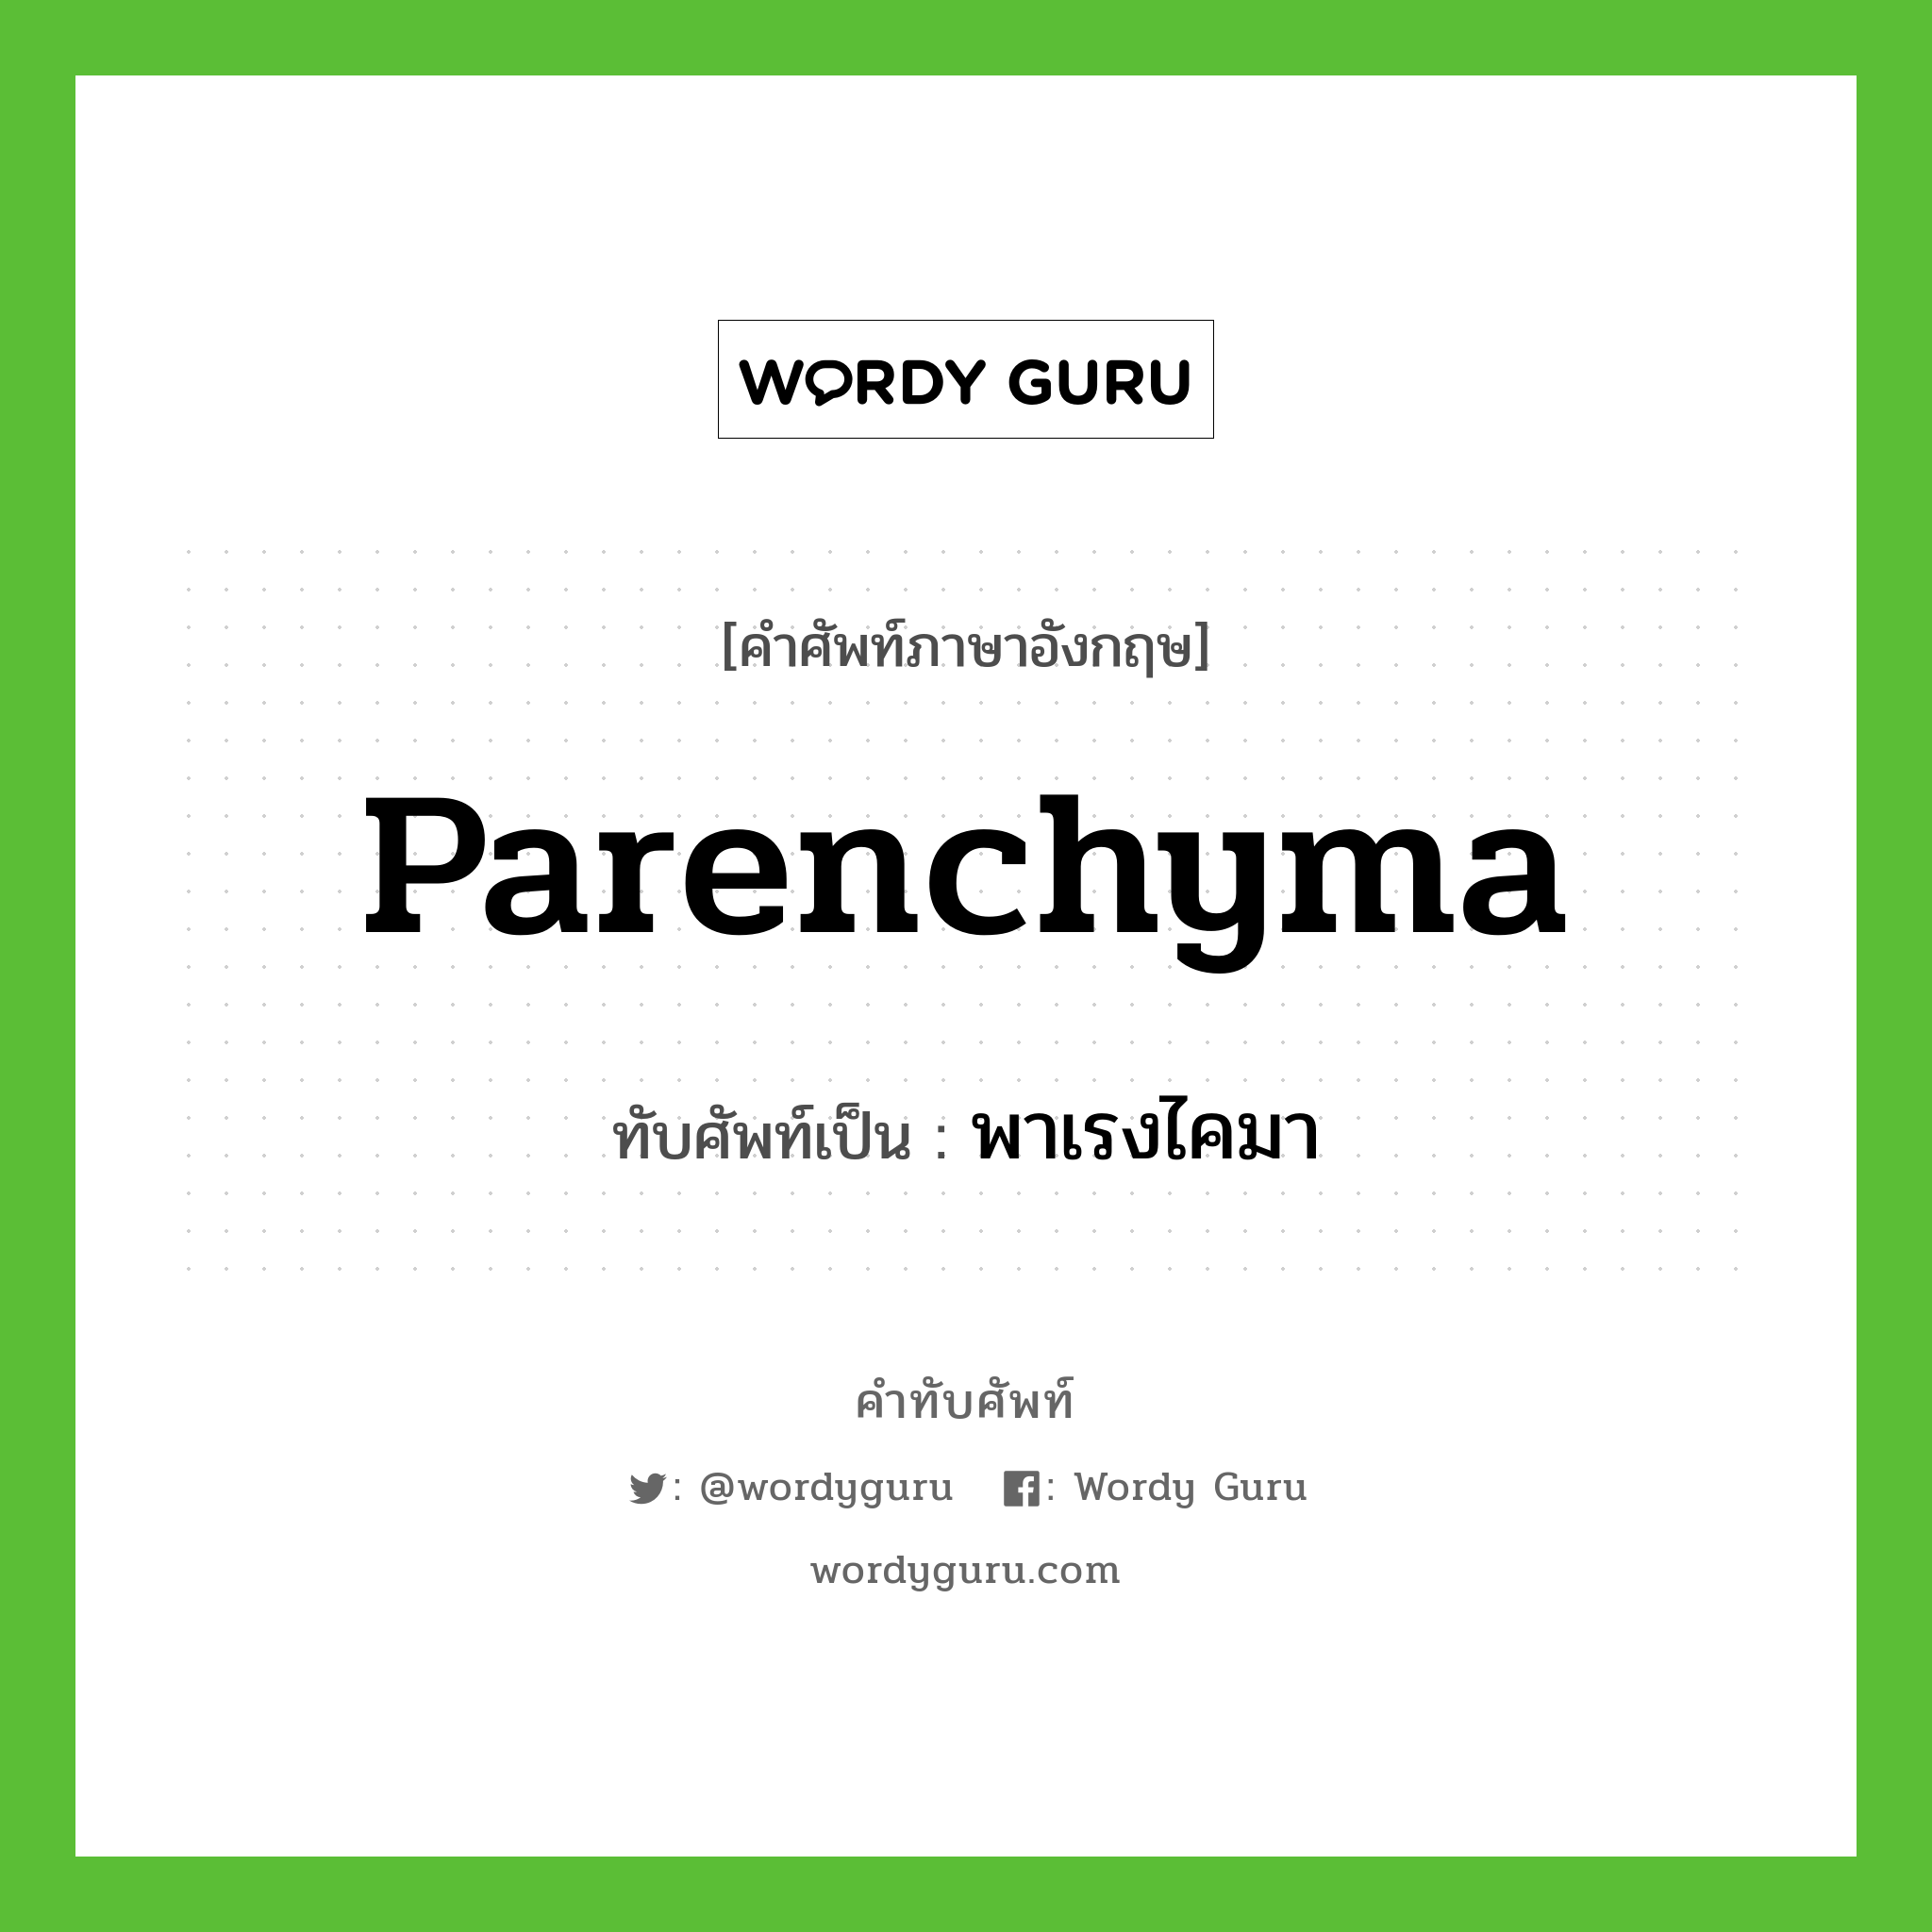 parenchyma เขียนเป็นคำไทยว่าอะไร?, คำศัพท์ภาษาอังกฤษ parenchyma ทับศัพท์เป็น พาเรงไคมา